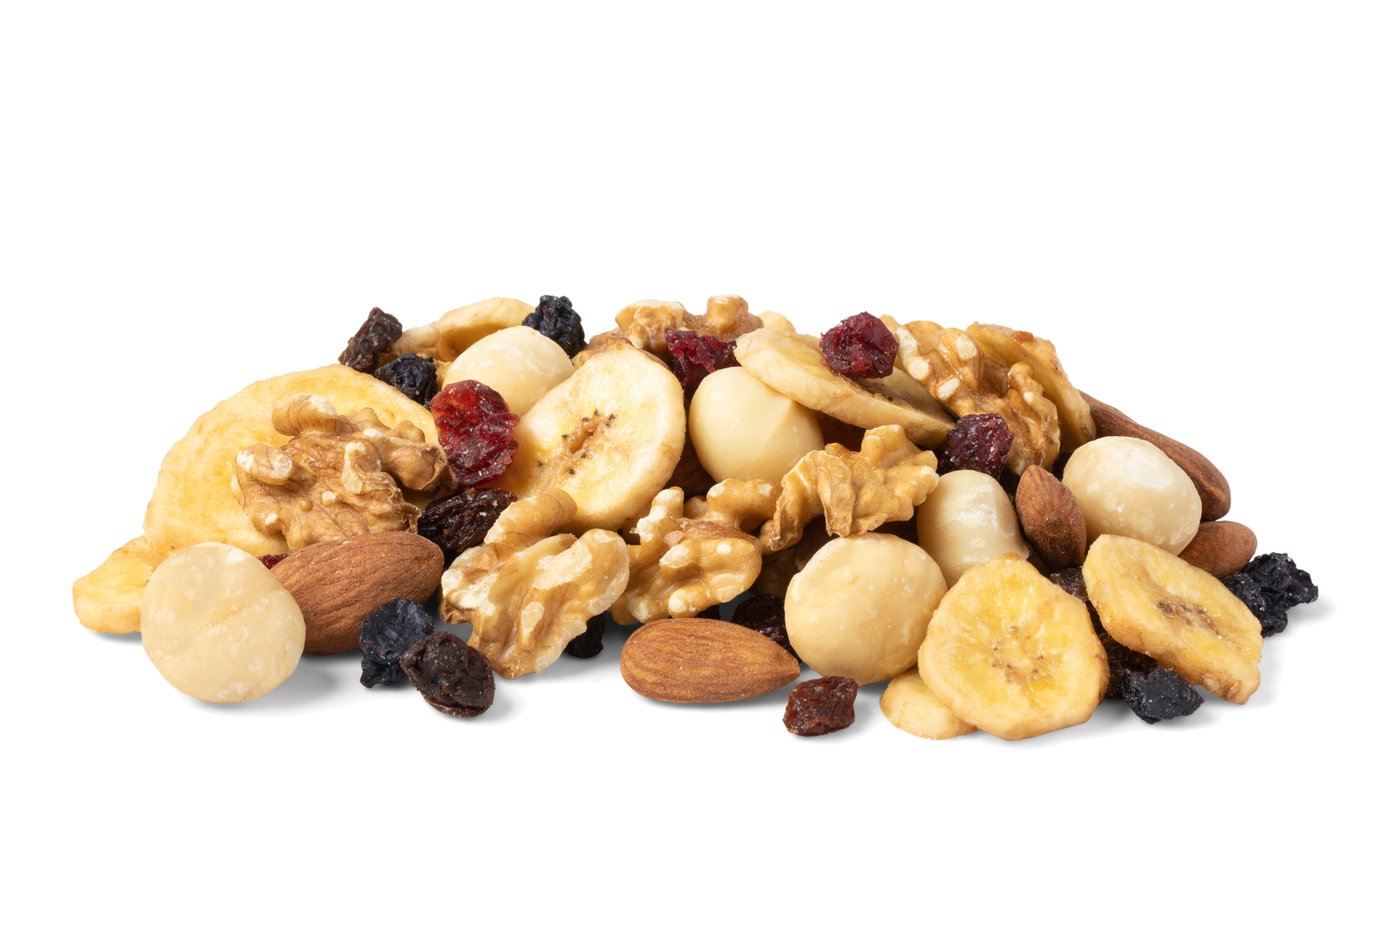 Organic Fruit & Nut Mix image zoom